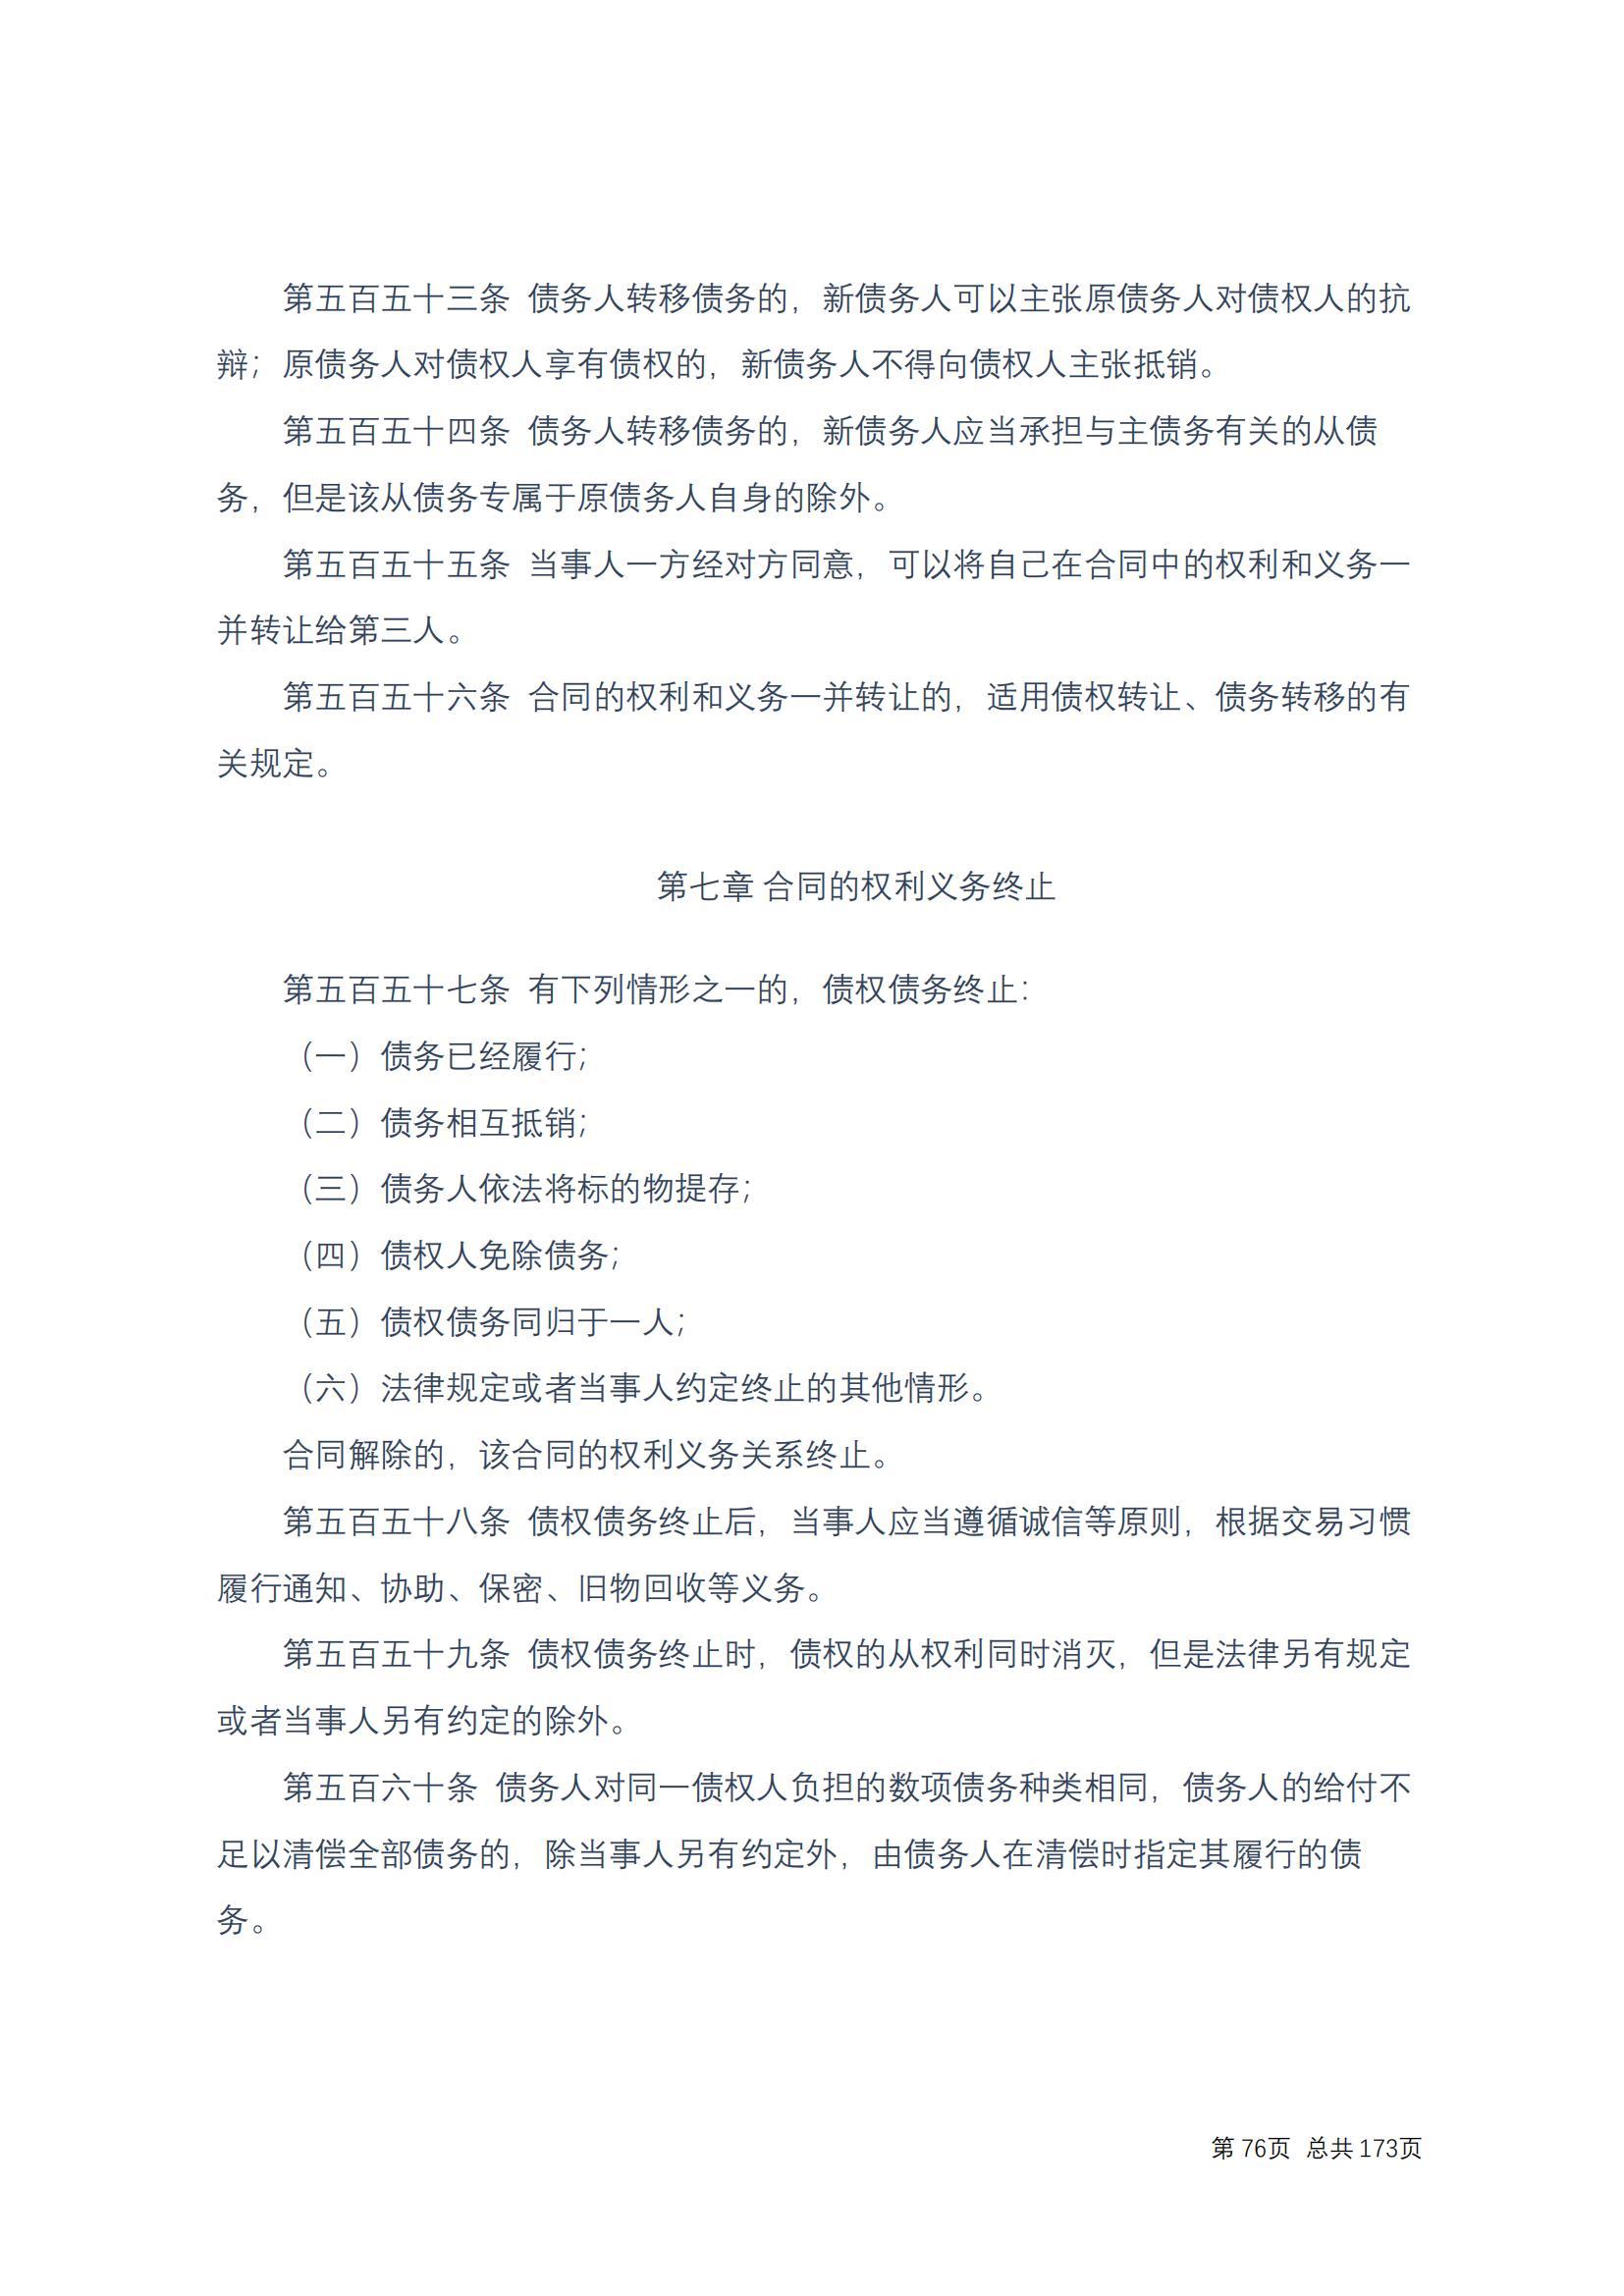 中华人民共和国民法典 修改过_75